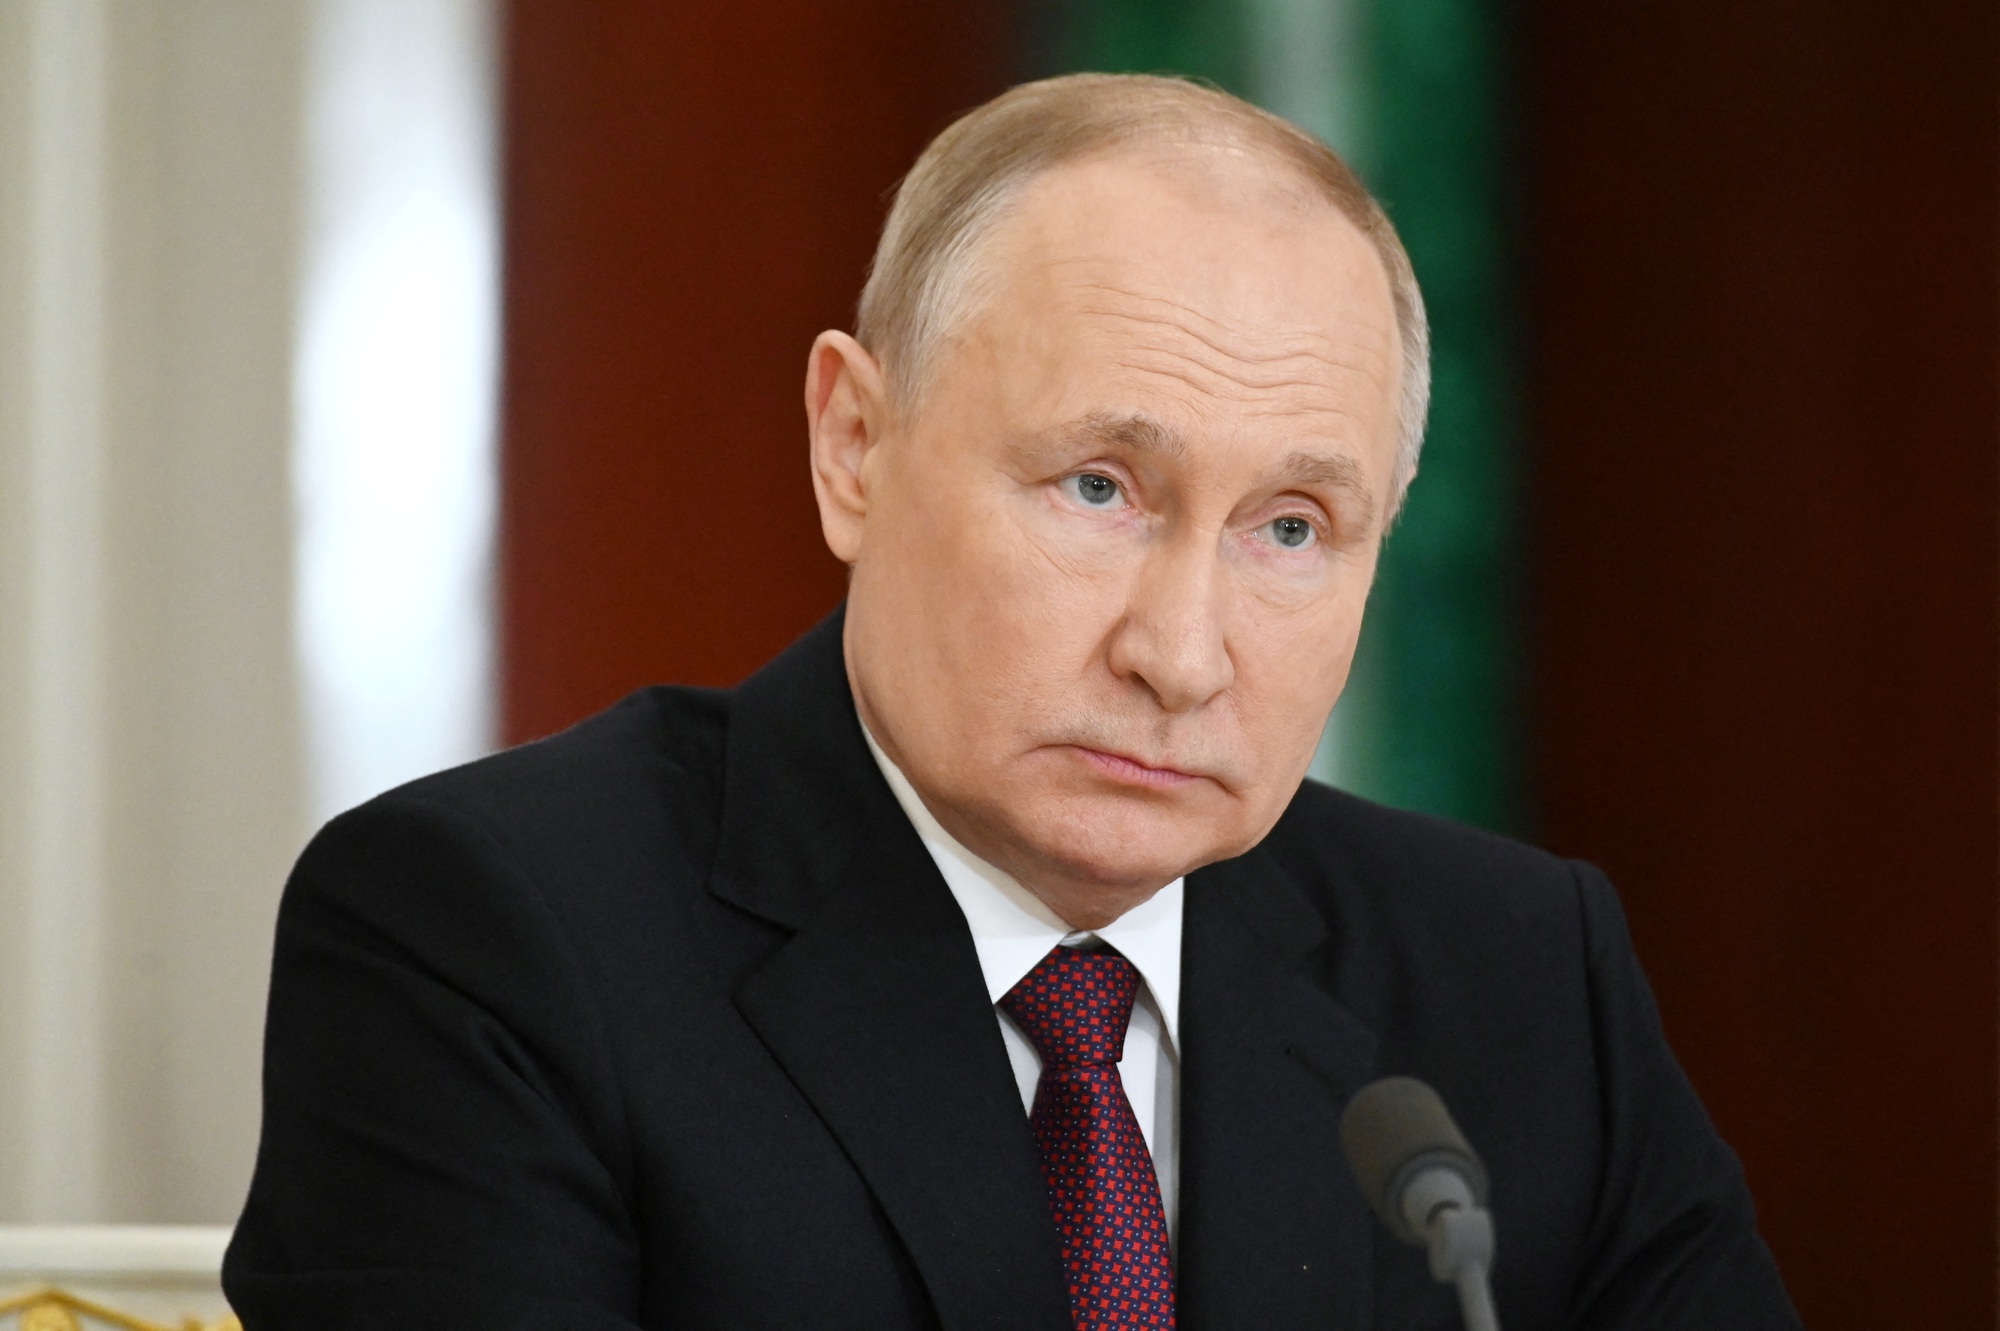 Tổng thống Ukraine nói sẽ ám sát tổng thống Nga, Điện Kremlin nói gì? - Ảnh 1.